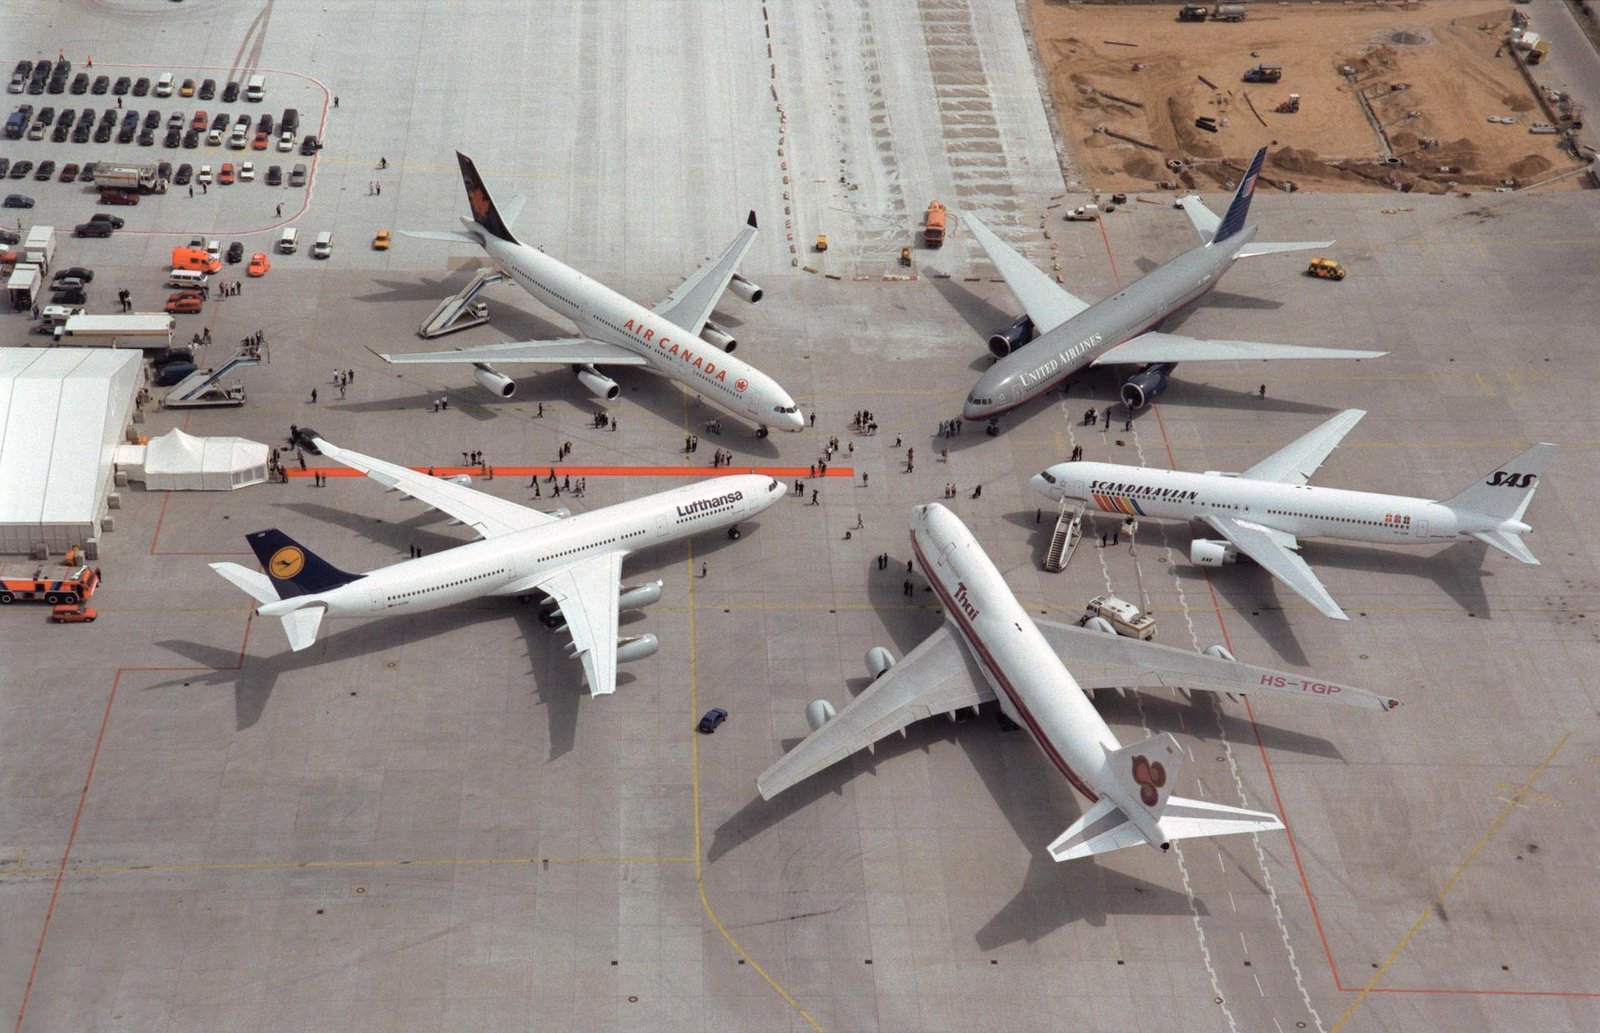 Ceremonia de fundación de Star Alliance con las 5 aerolíneas que conformaban originalmente la primera alianza del mundo el 14 de mayo de 1997: Thai Airways, Lufthansa, Air Canada, United Airlines y SAS